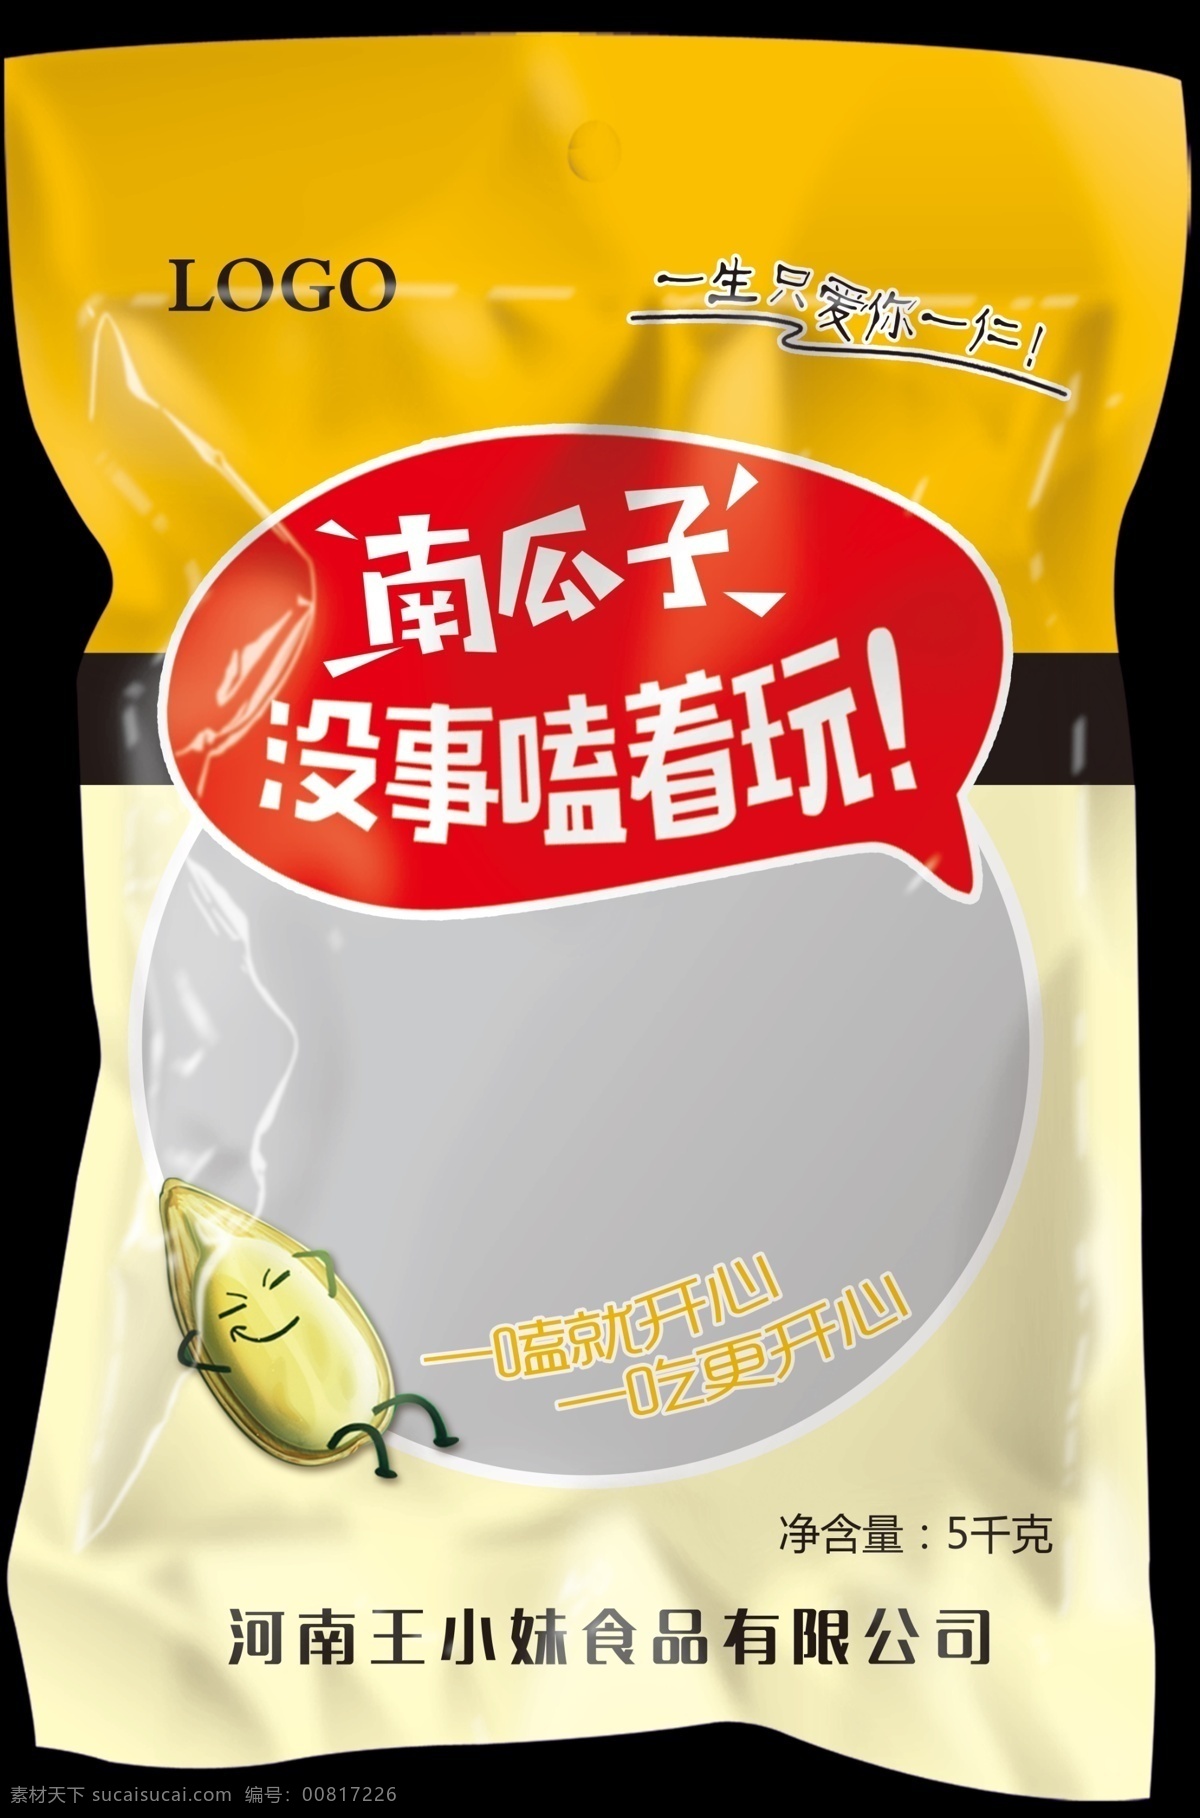 瓜子 南瓜子包装 卡通瓜子 嗑瓜子 食品包装 包装 干果 食用类 包装设计